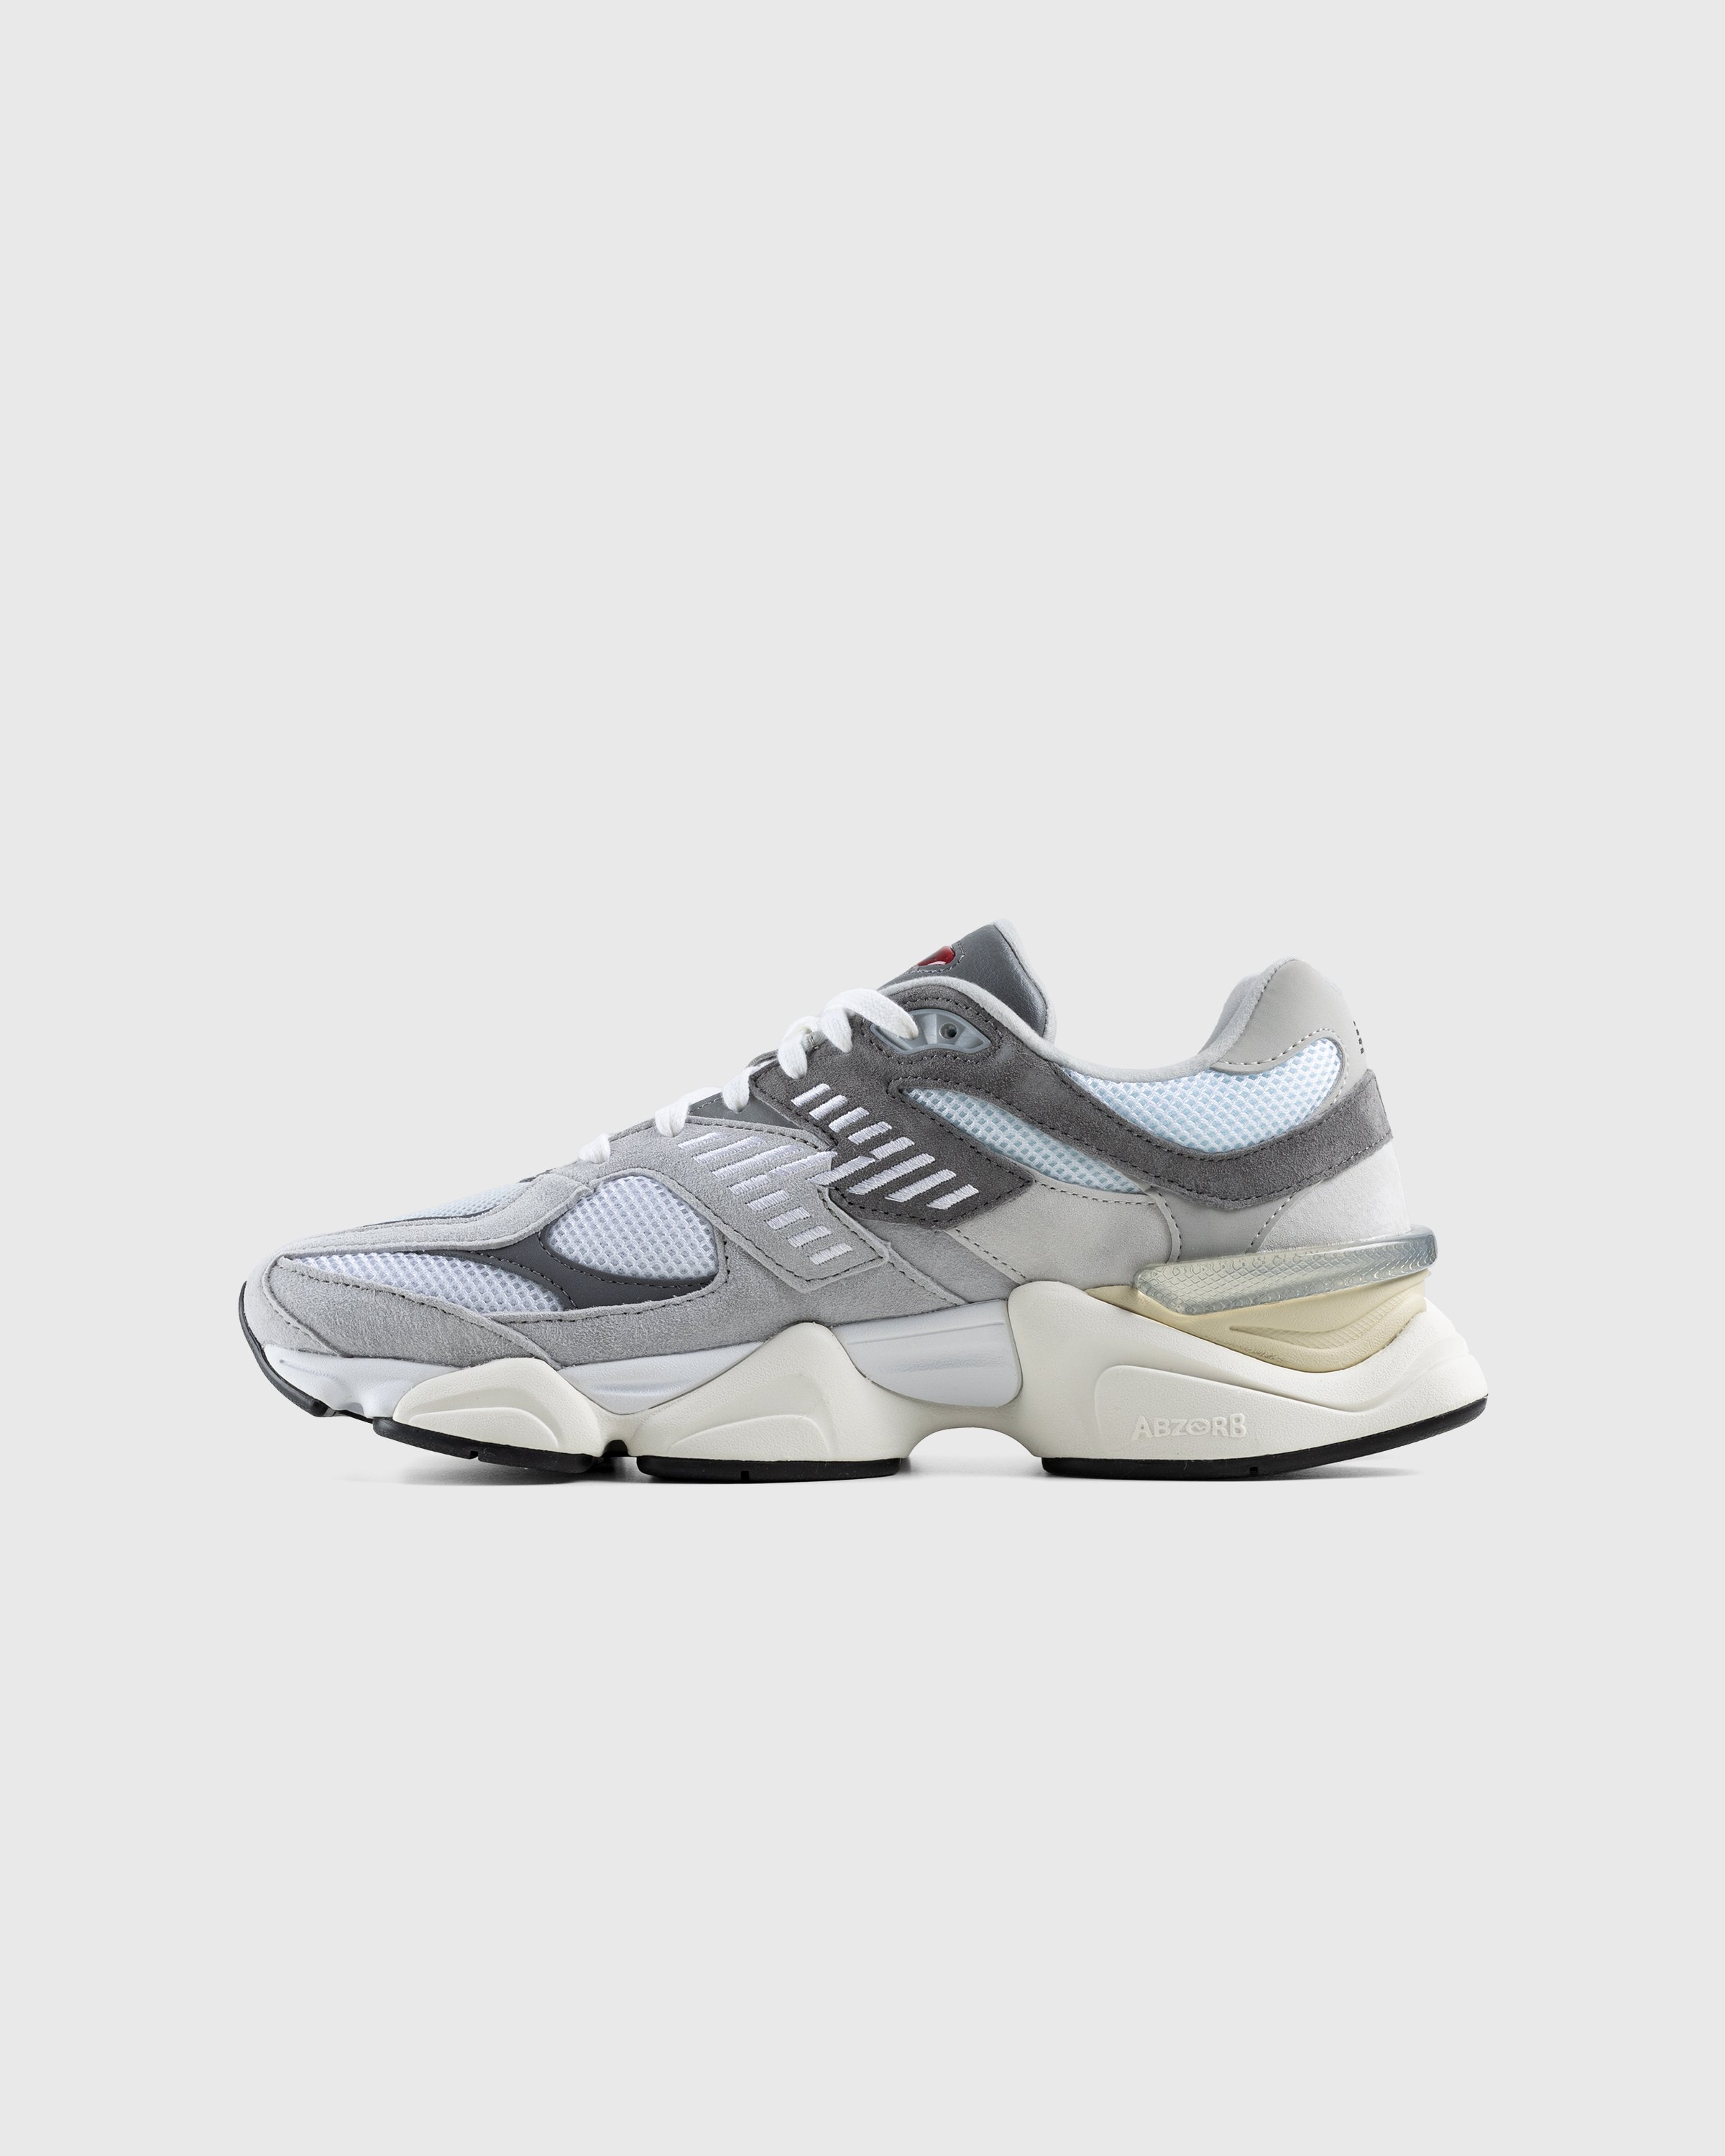 New Balance - U9060GRY Grey - Footwear - Grey - Image 2